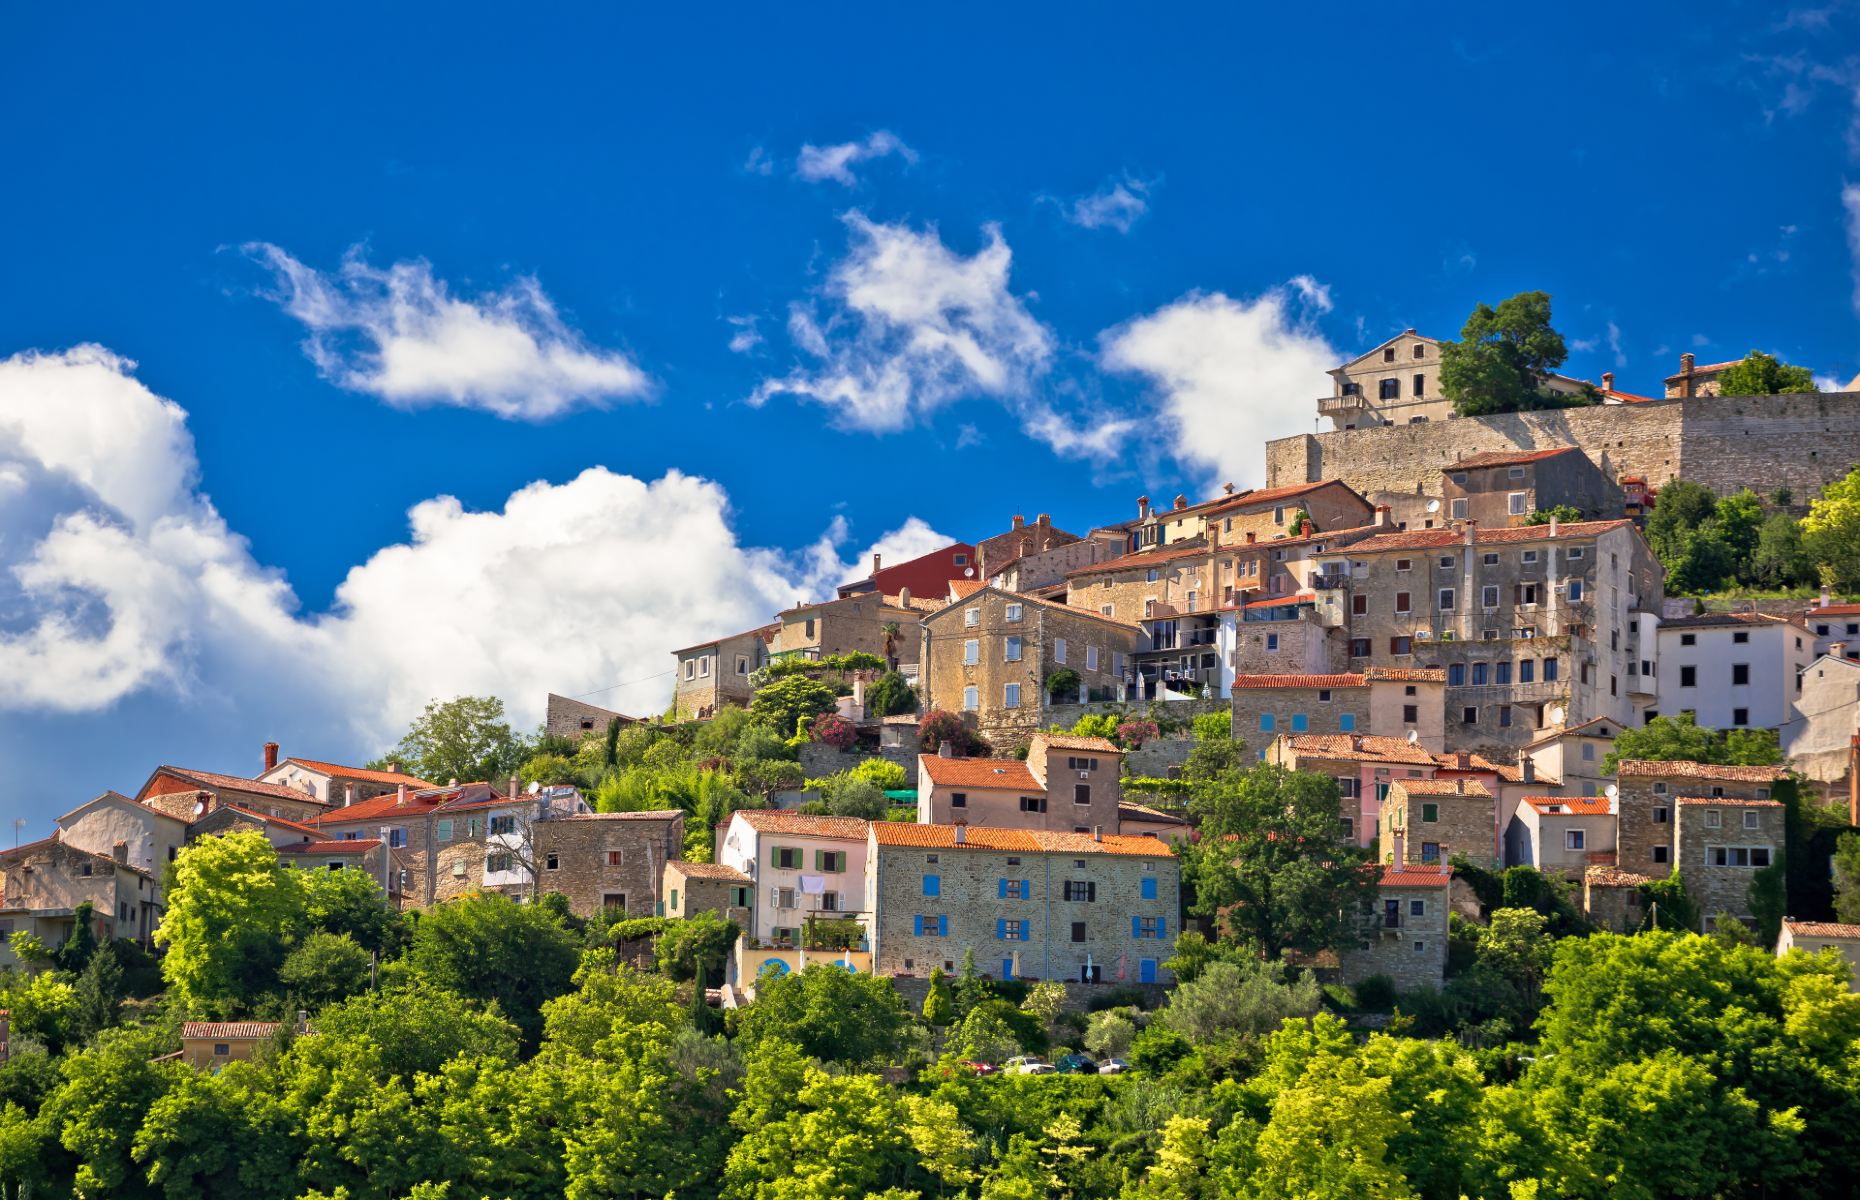 Motovun, a typical Istria hilltop town (Image: xbrchx/Shutterstock)